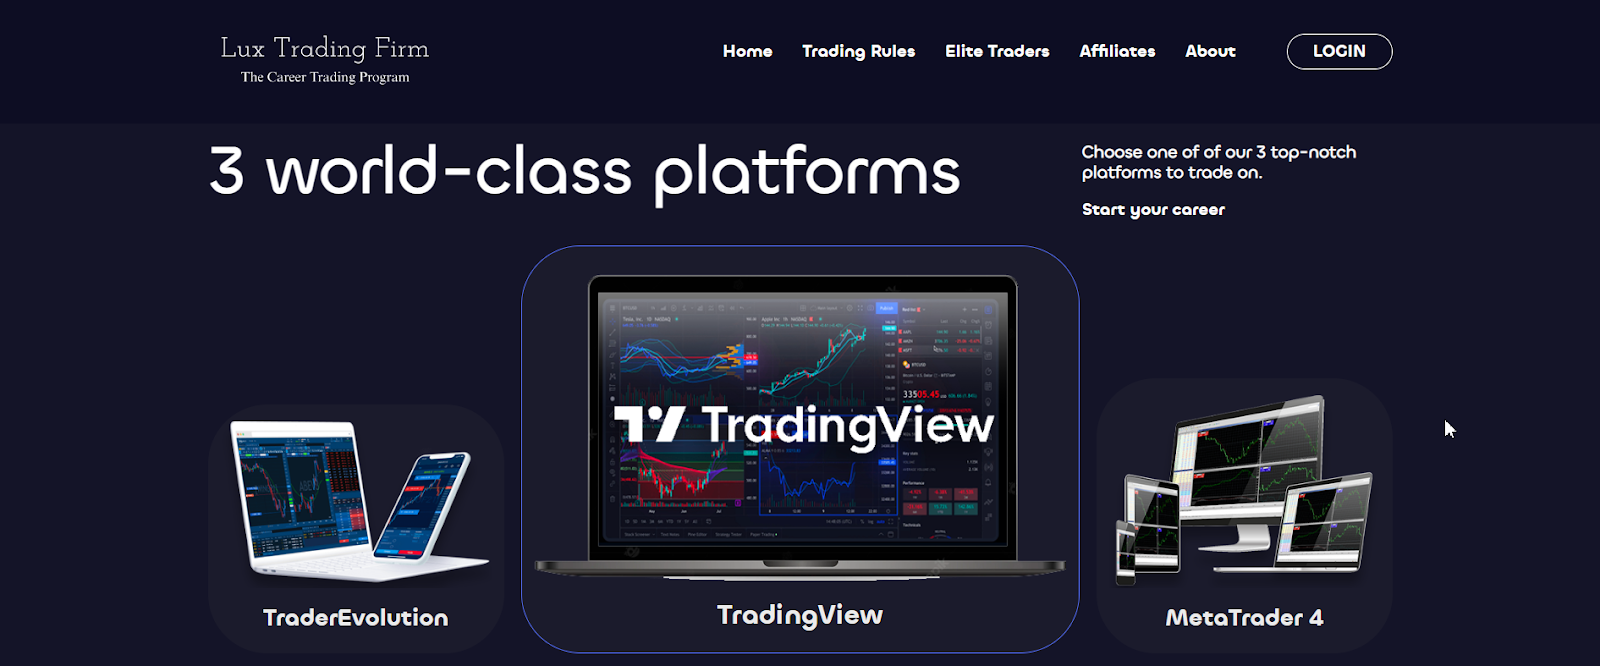 Reseña de Lux Trading Firm - Seleccione una plataforma de trading